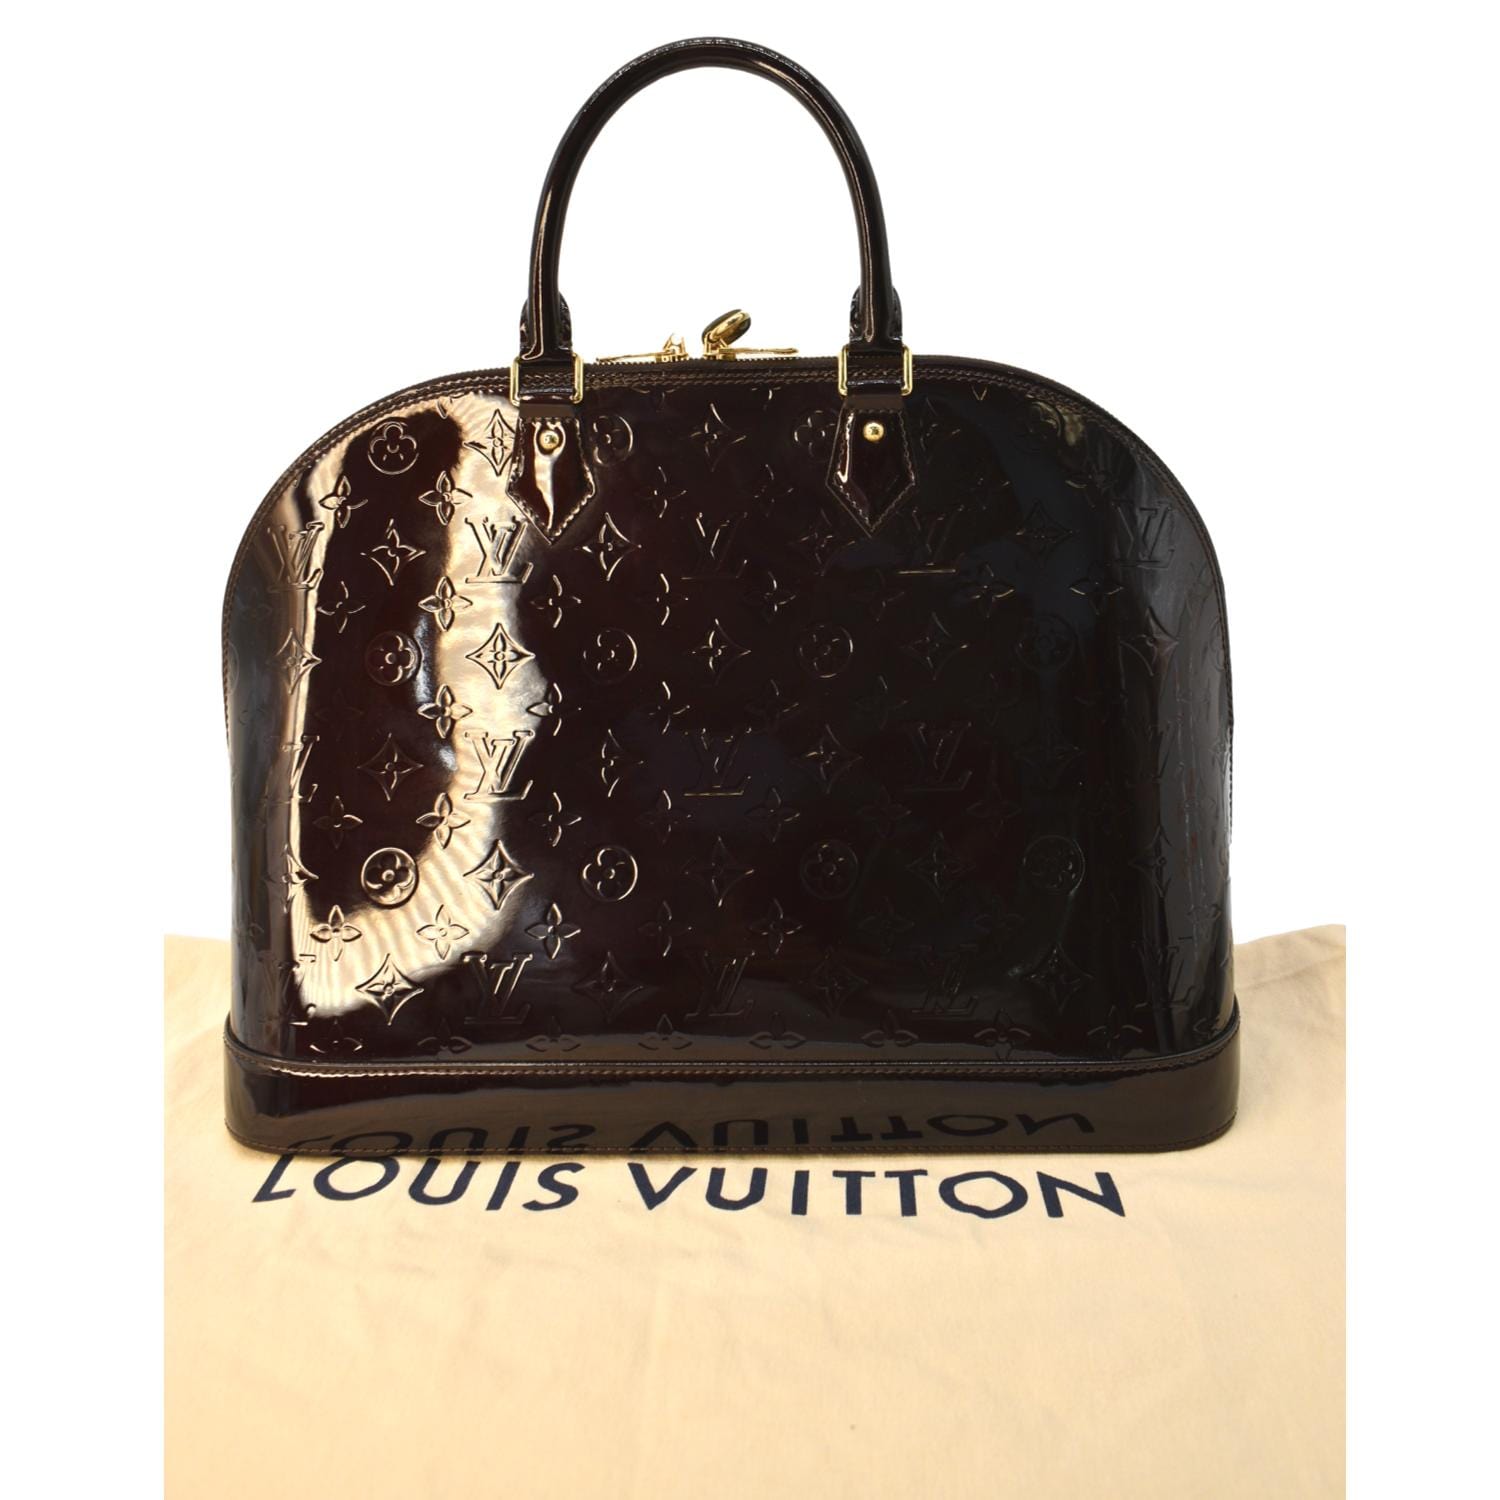 Louis Vuitton Louis Vuitton Silver Vernis Leather Mott Hand Bag